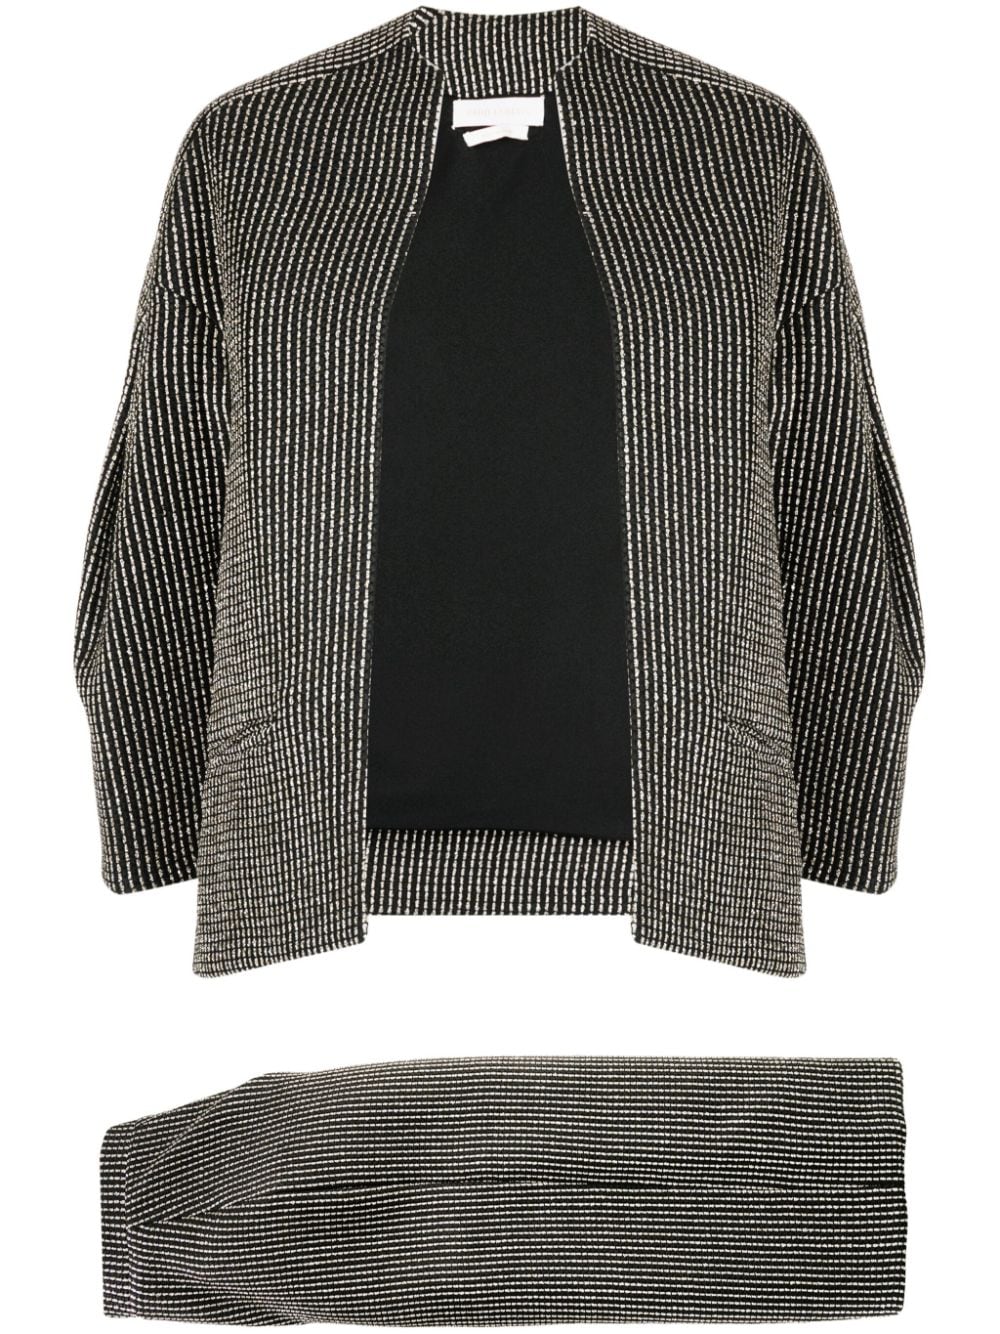 Saiid Kobeisy geometric-pattern brocade skirt suit - Black von Saiid Kobeisy